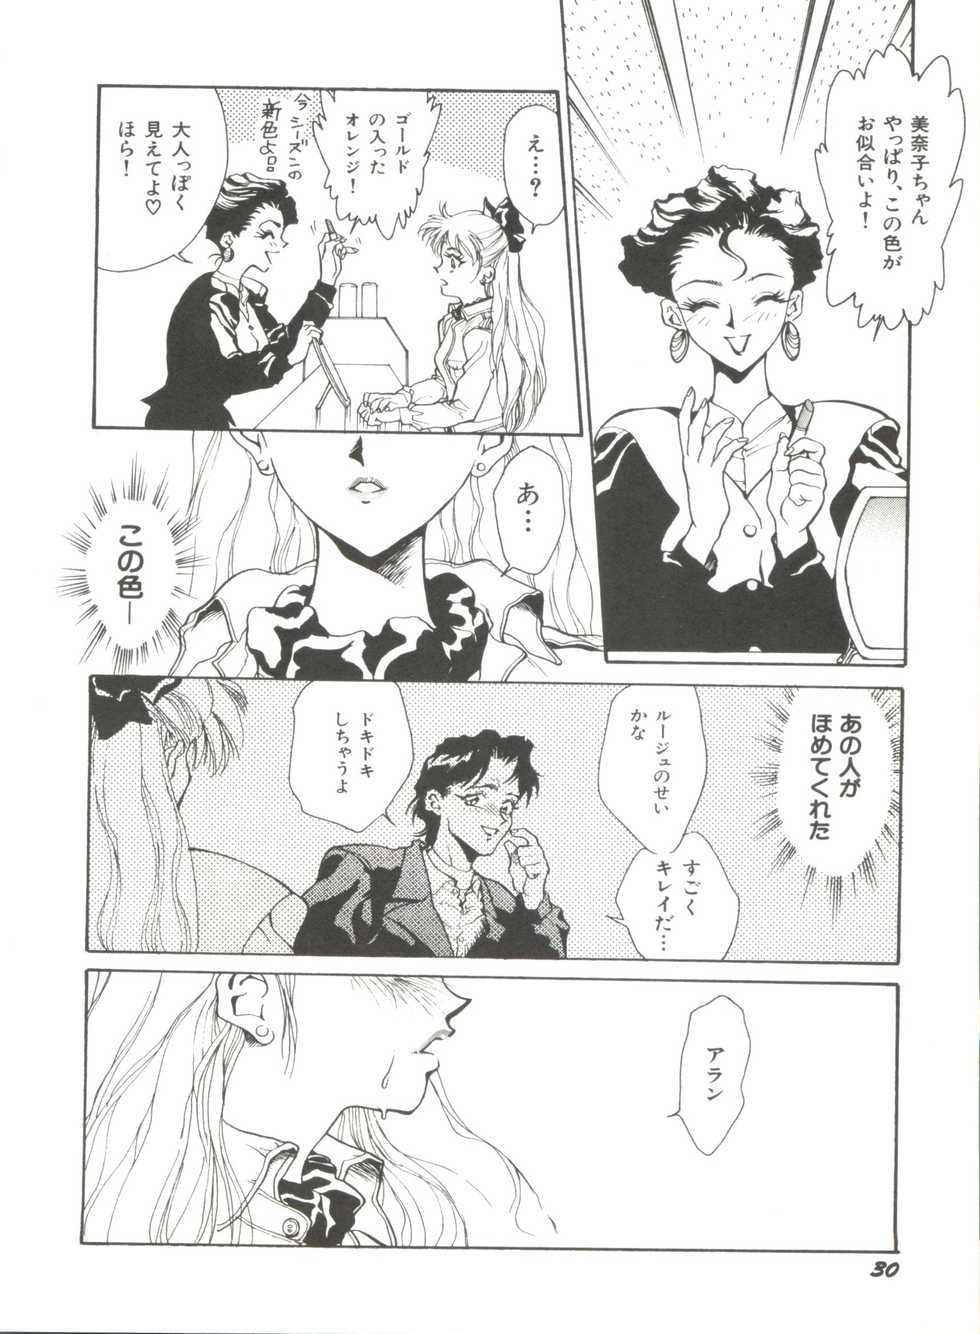 [Anthology] Bishoujo Doujinshi Anthology 2 - Moon Paradise 1 Tsuki no Rakuen (Bishoujo Senshi Sailor Moon) - Page 33